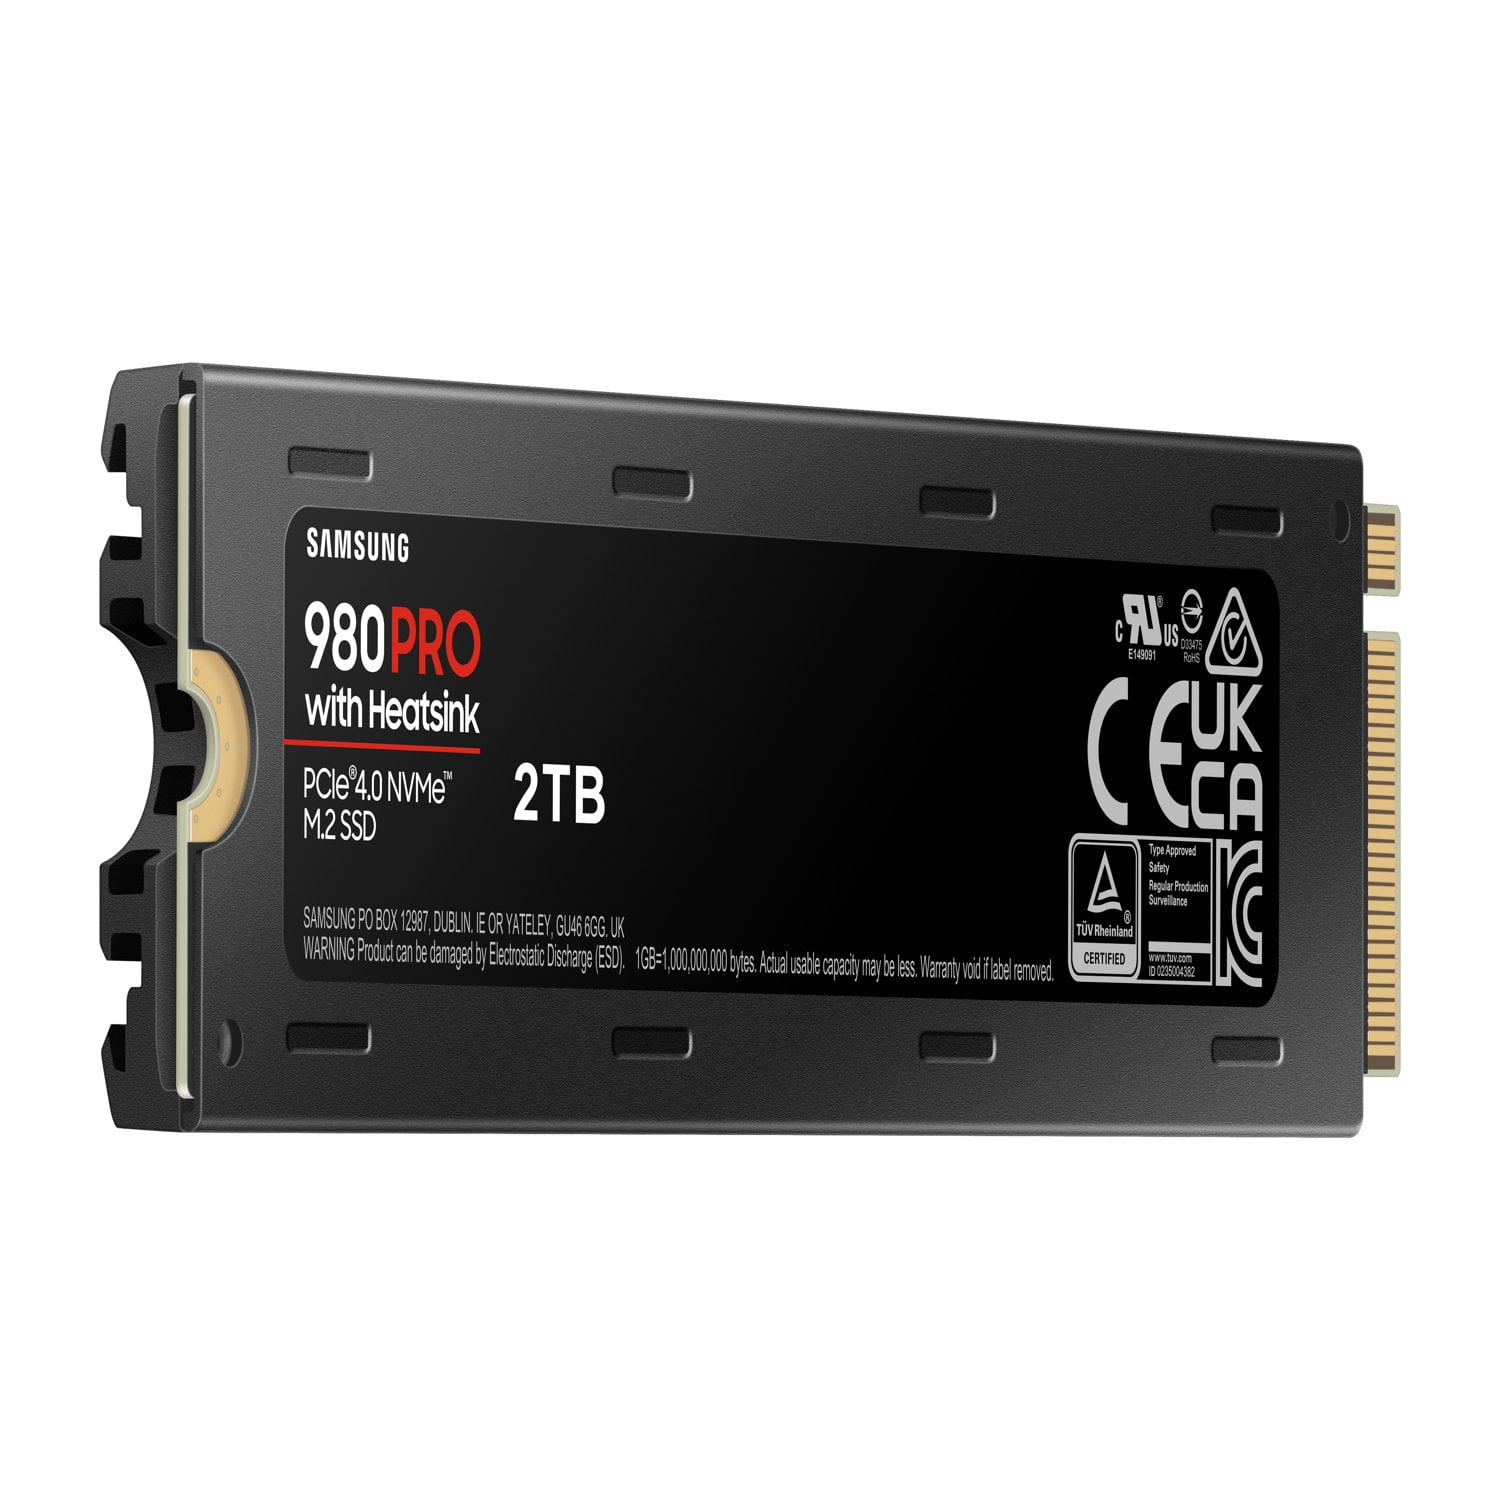 SAMSUNG 980 PRO Heatsink M.2 2280 1TB PCI-Express 4.0 - Internal State Drive (SSD) MZ-V8P1T0CW - Walmart.com